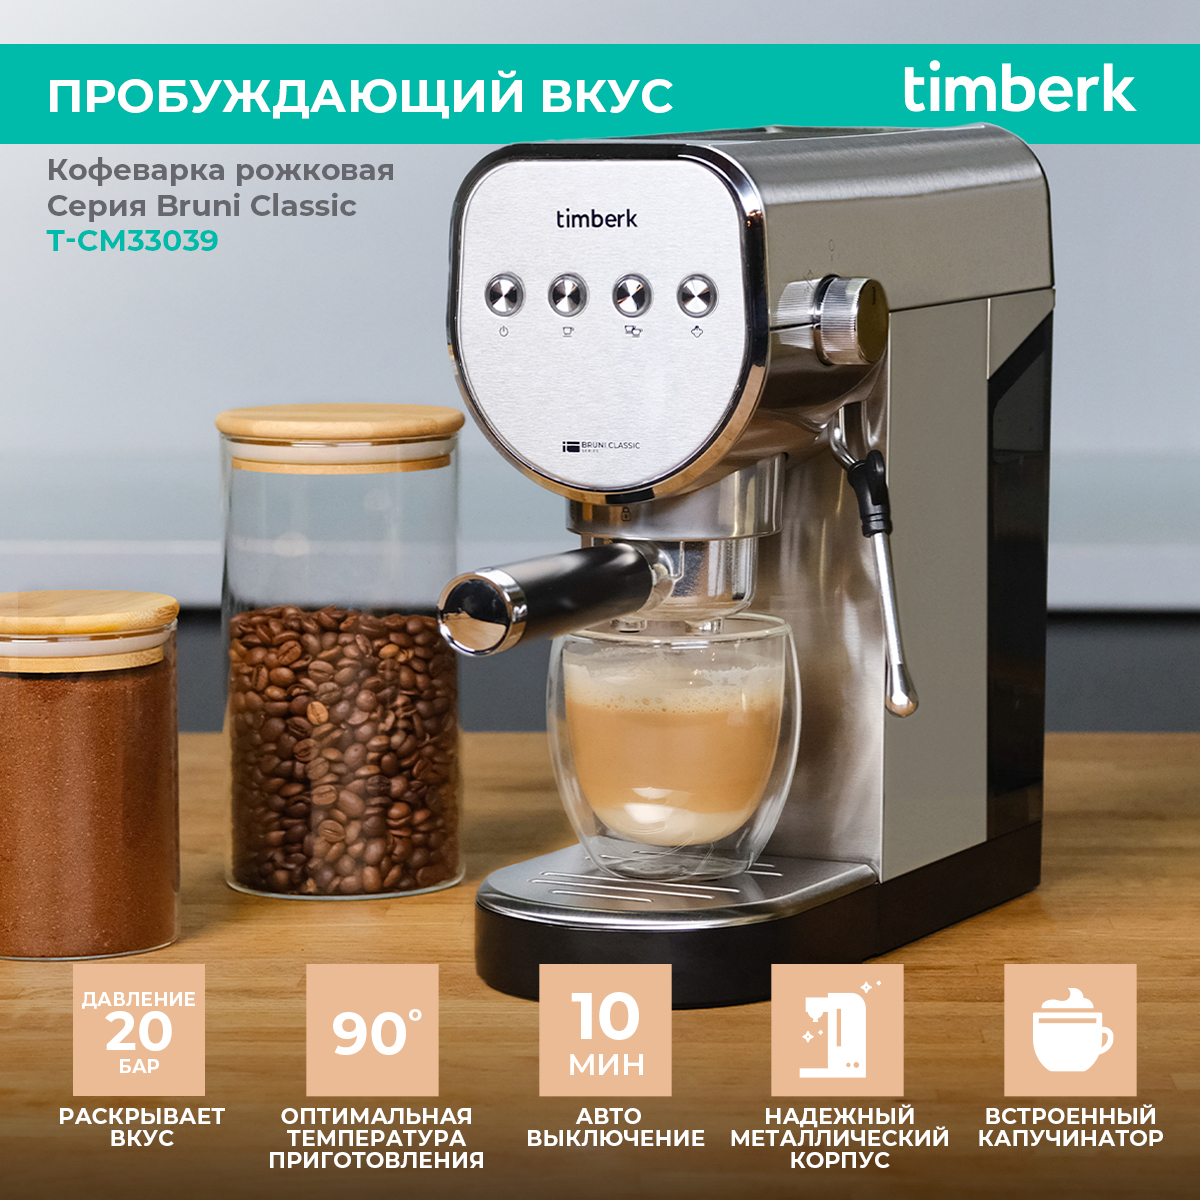 Рожковая кофеварка Timberk T-CM33039 серебристая кофеварка рожковая hyundai hem 3203 1000 вт белый серебристый